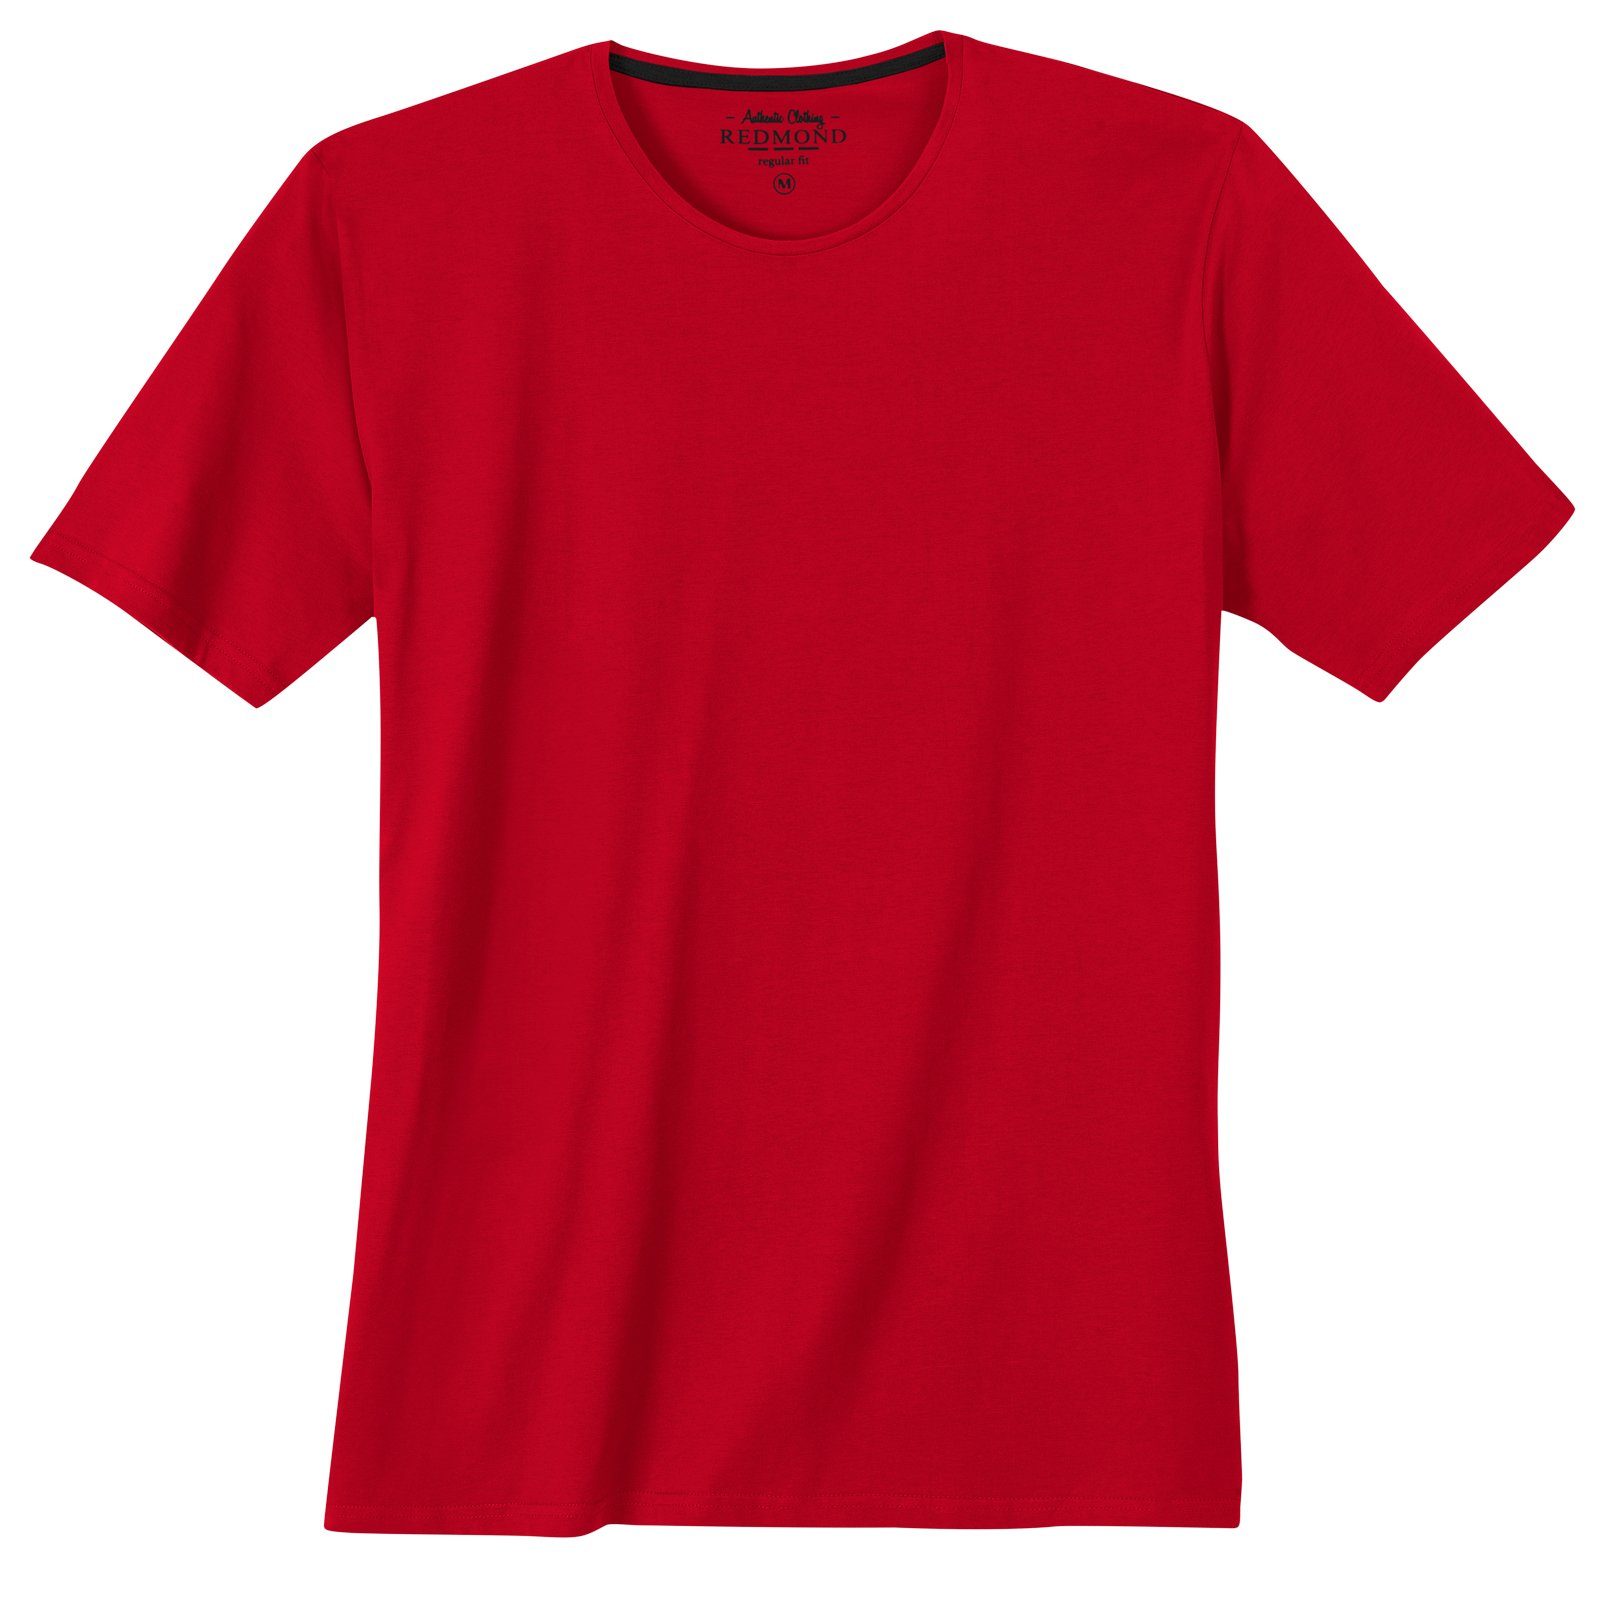 Redmond Herren rot T-Shirt Übergrößen Rundhalsshirt Redmond